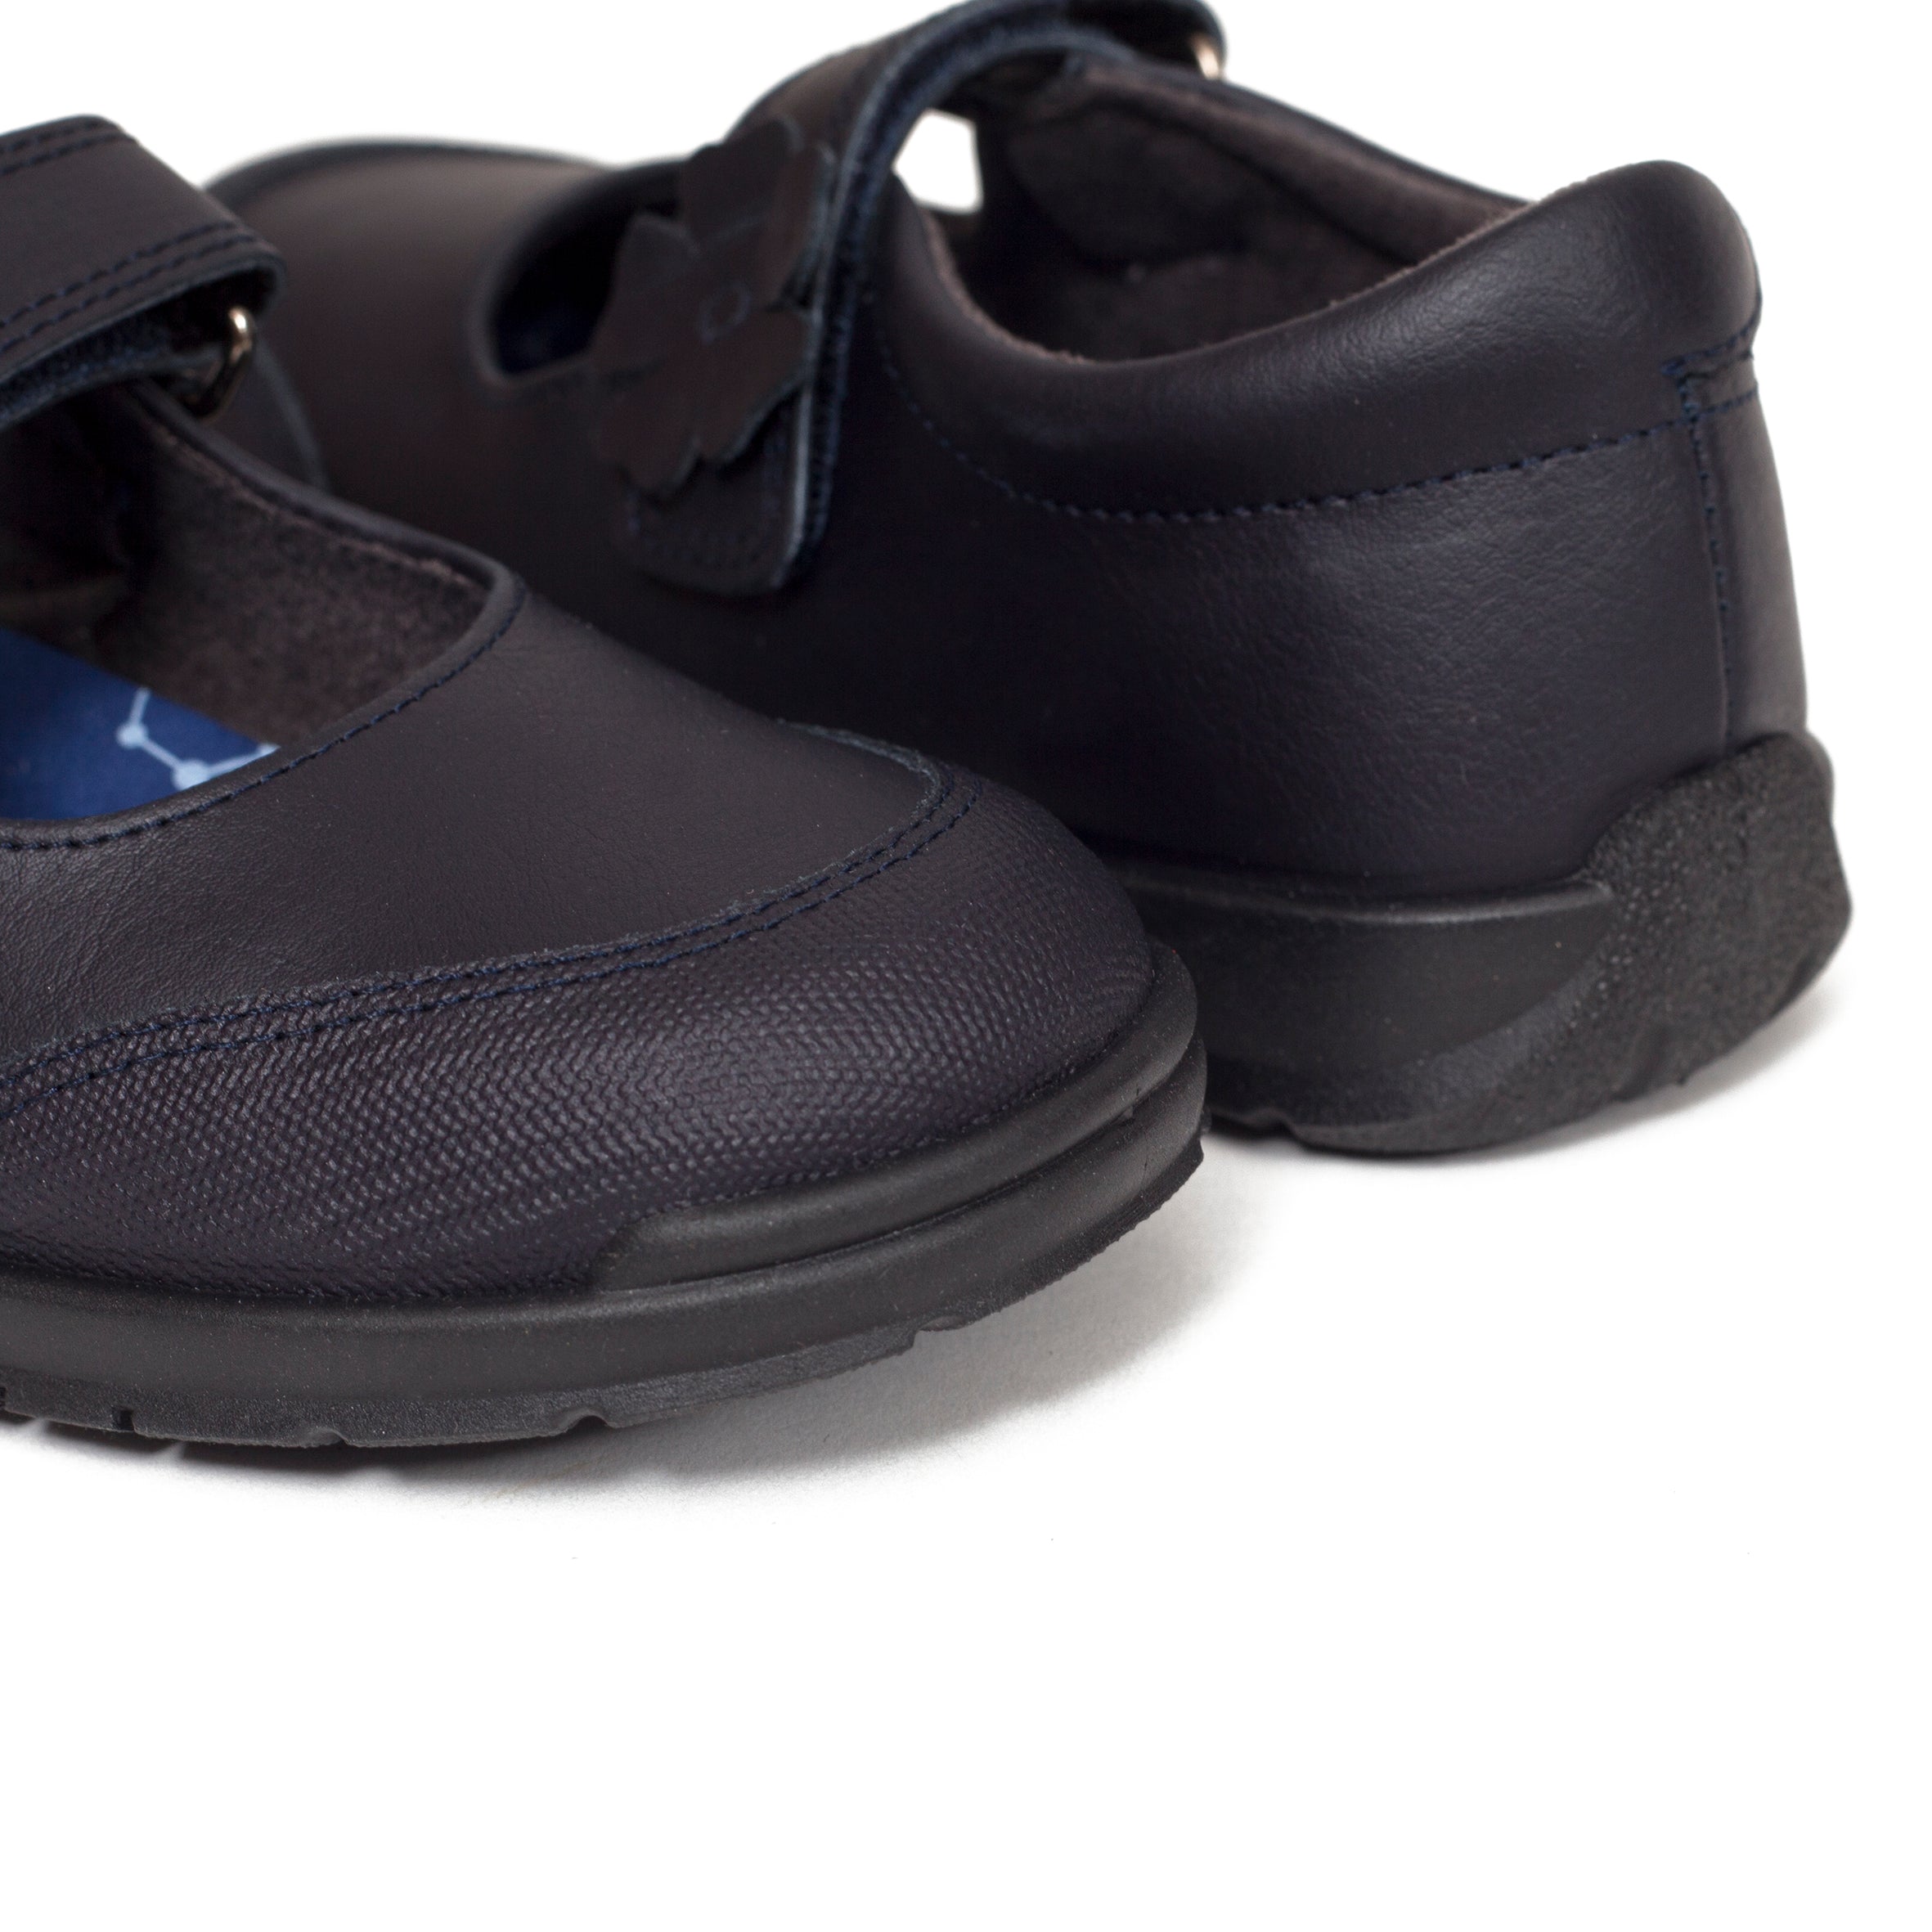 Zapatos Escolares de Niña Azul Marino - CALZADOS ELCHE